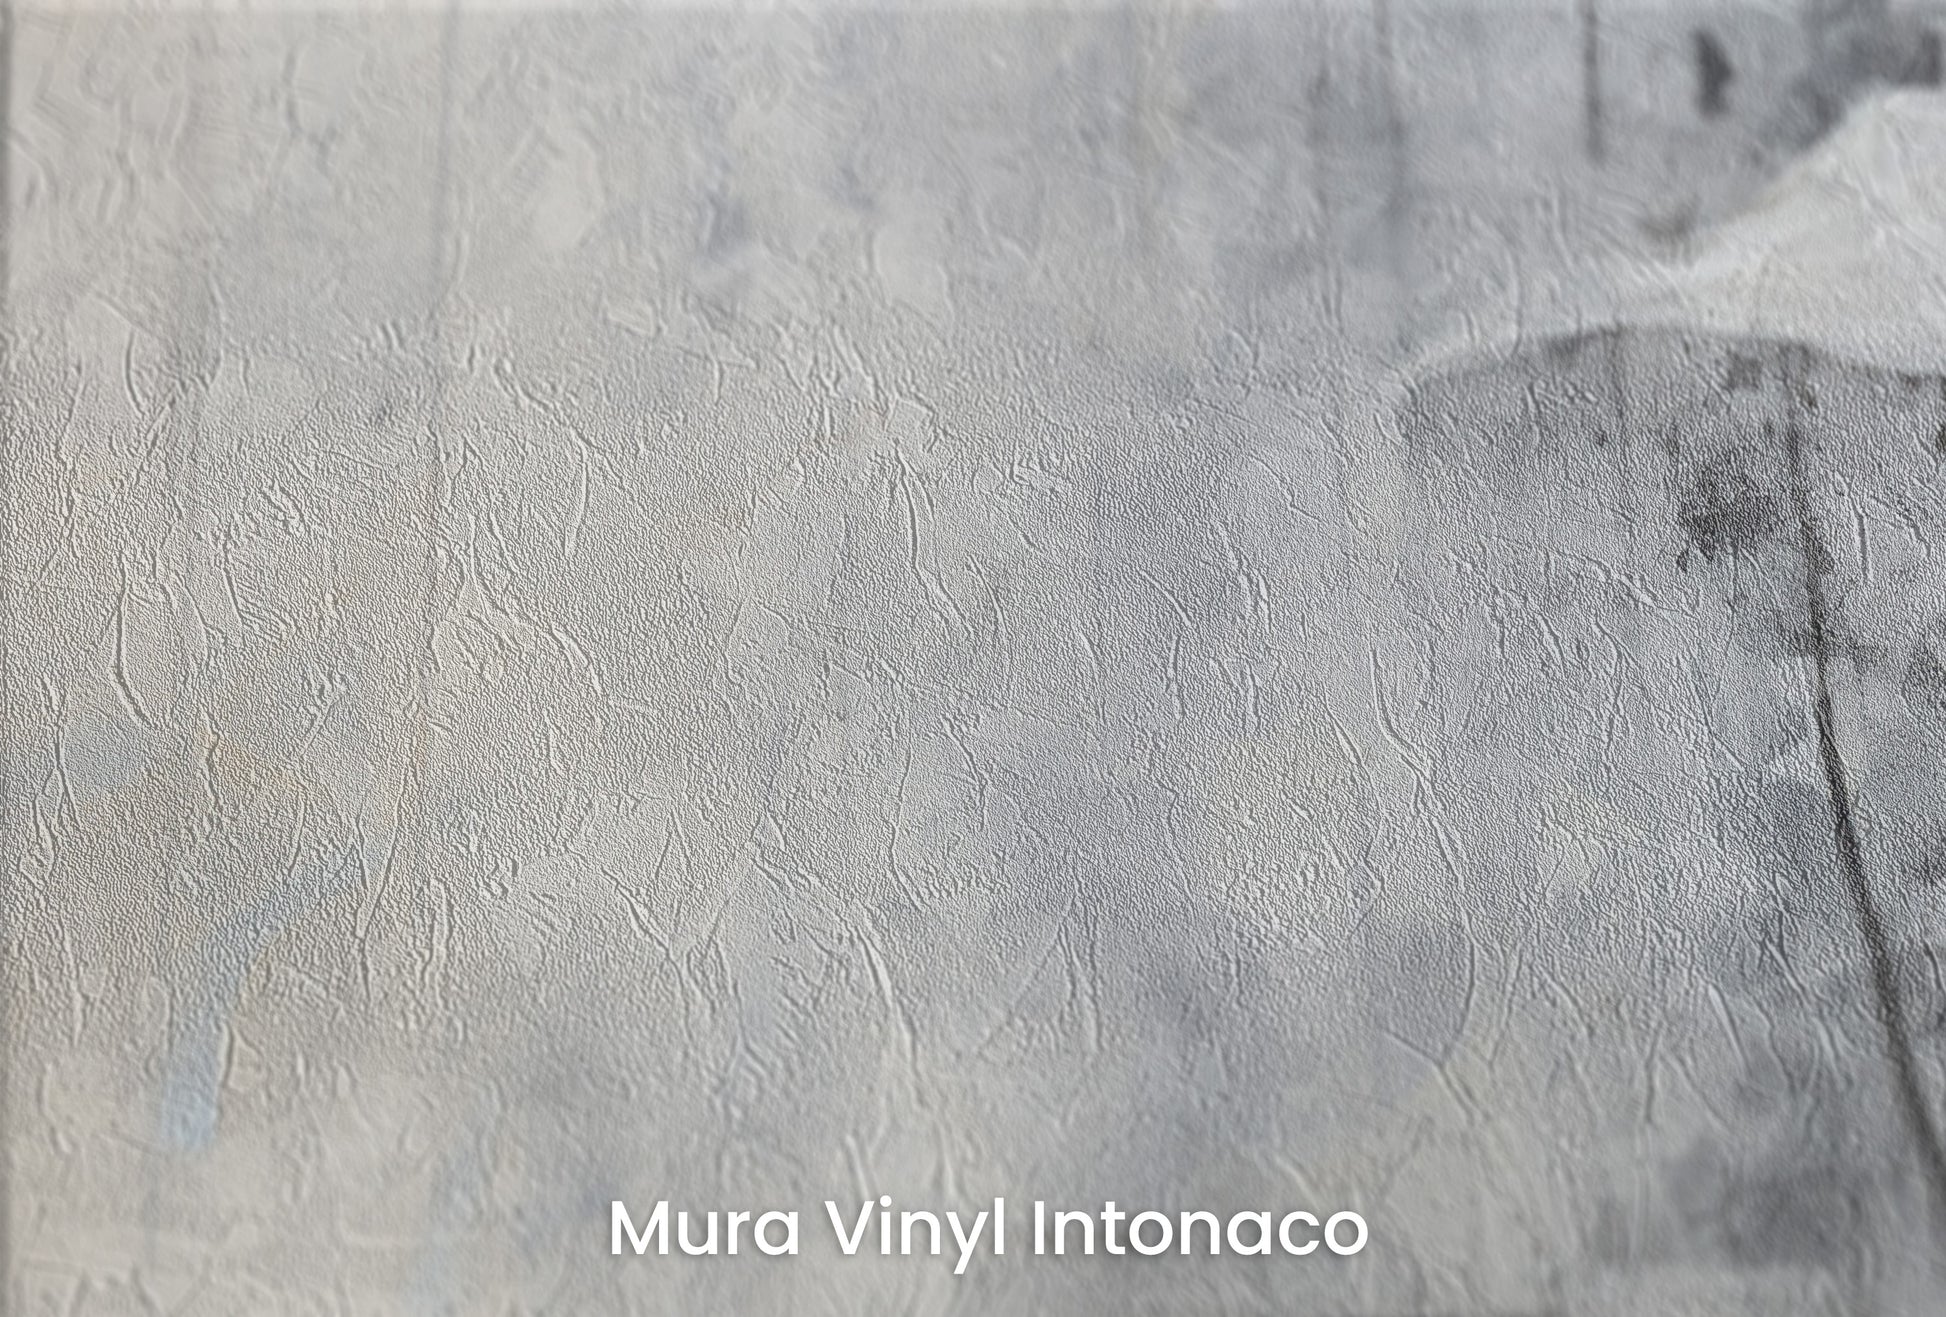 Zbliżenie na artystyczną fototapetę o nazwie SOFTLY SPEAKING SILHOUETTES na podłożu Mura Vinyl Intonaco - struktura tartego tynku.